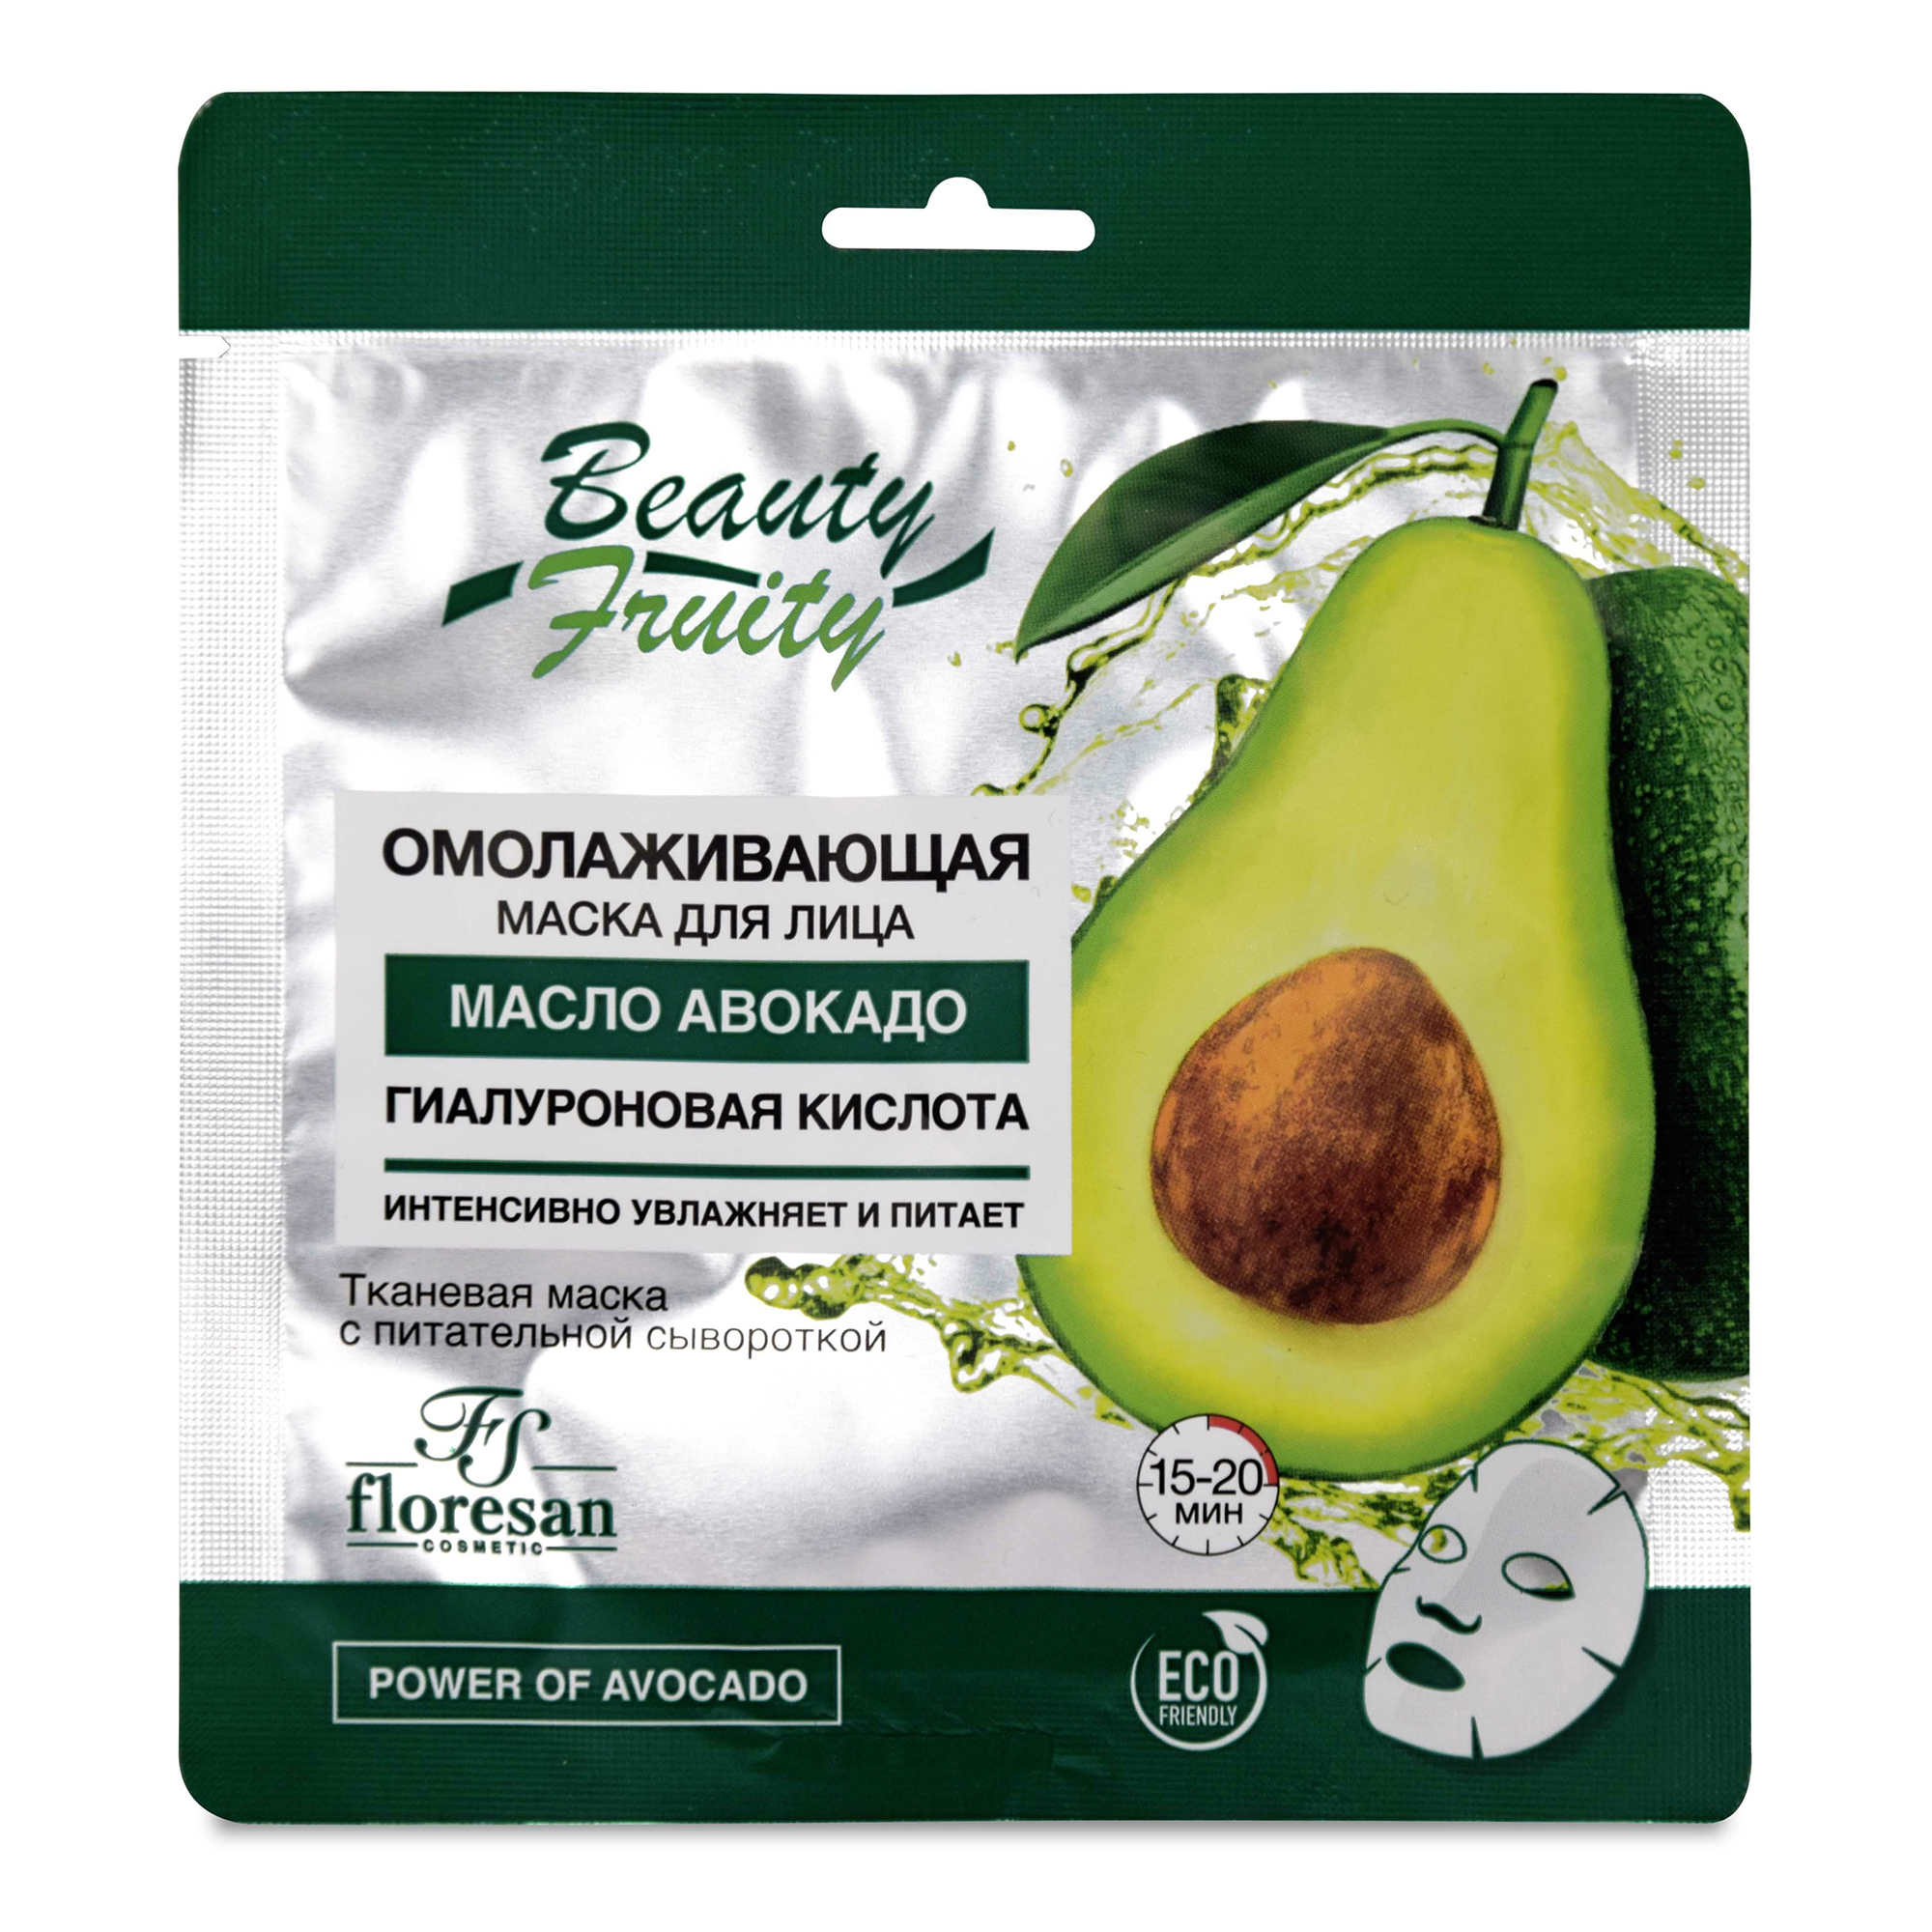 Маска для лица Floresan Beauty Frutty с авокадо, омолаживающая, 36 г